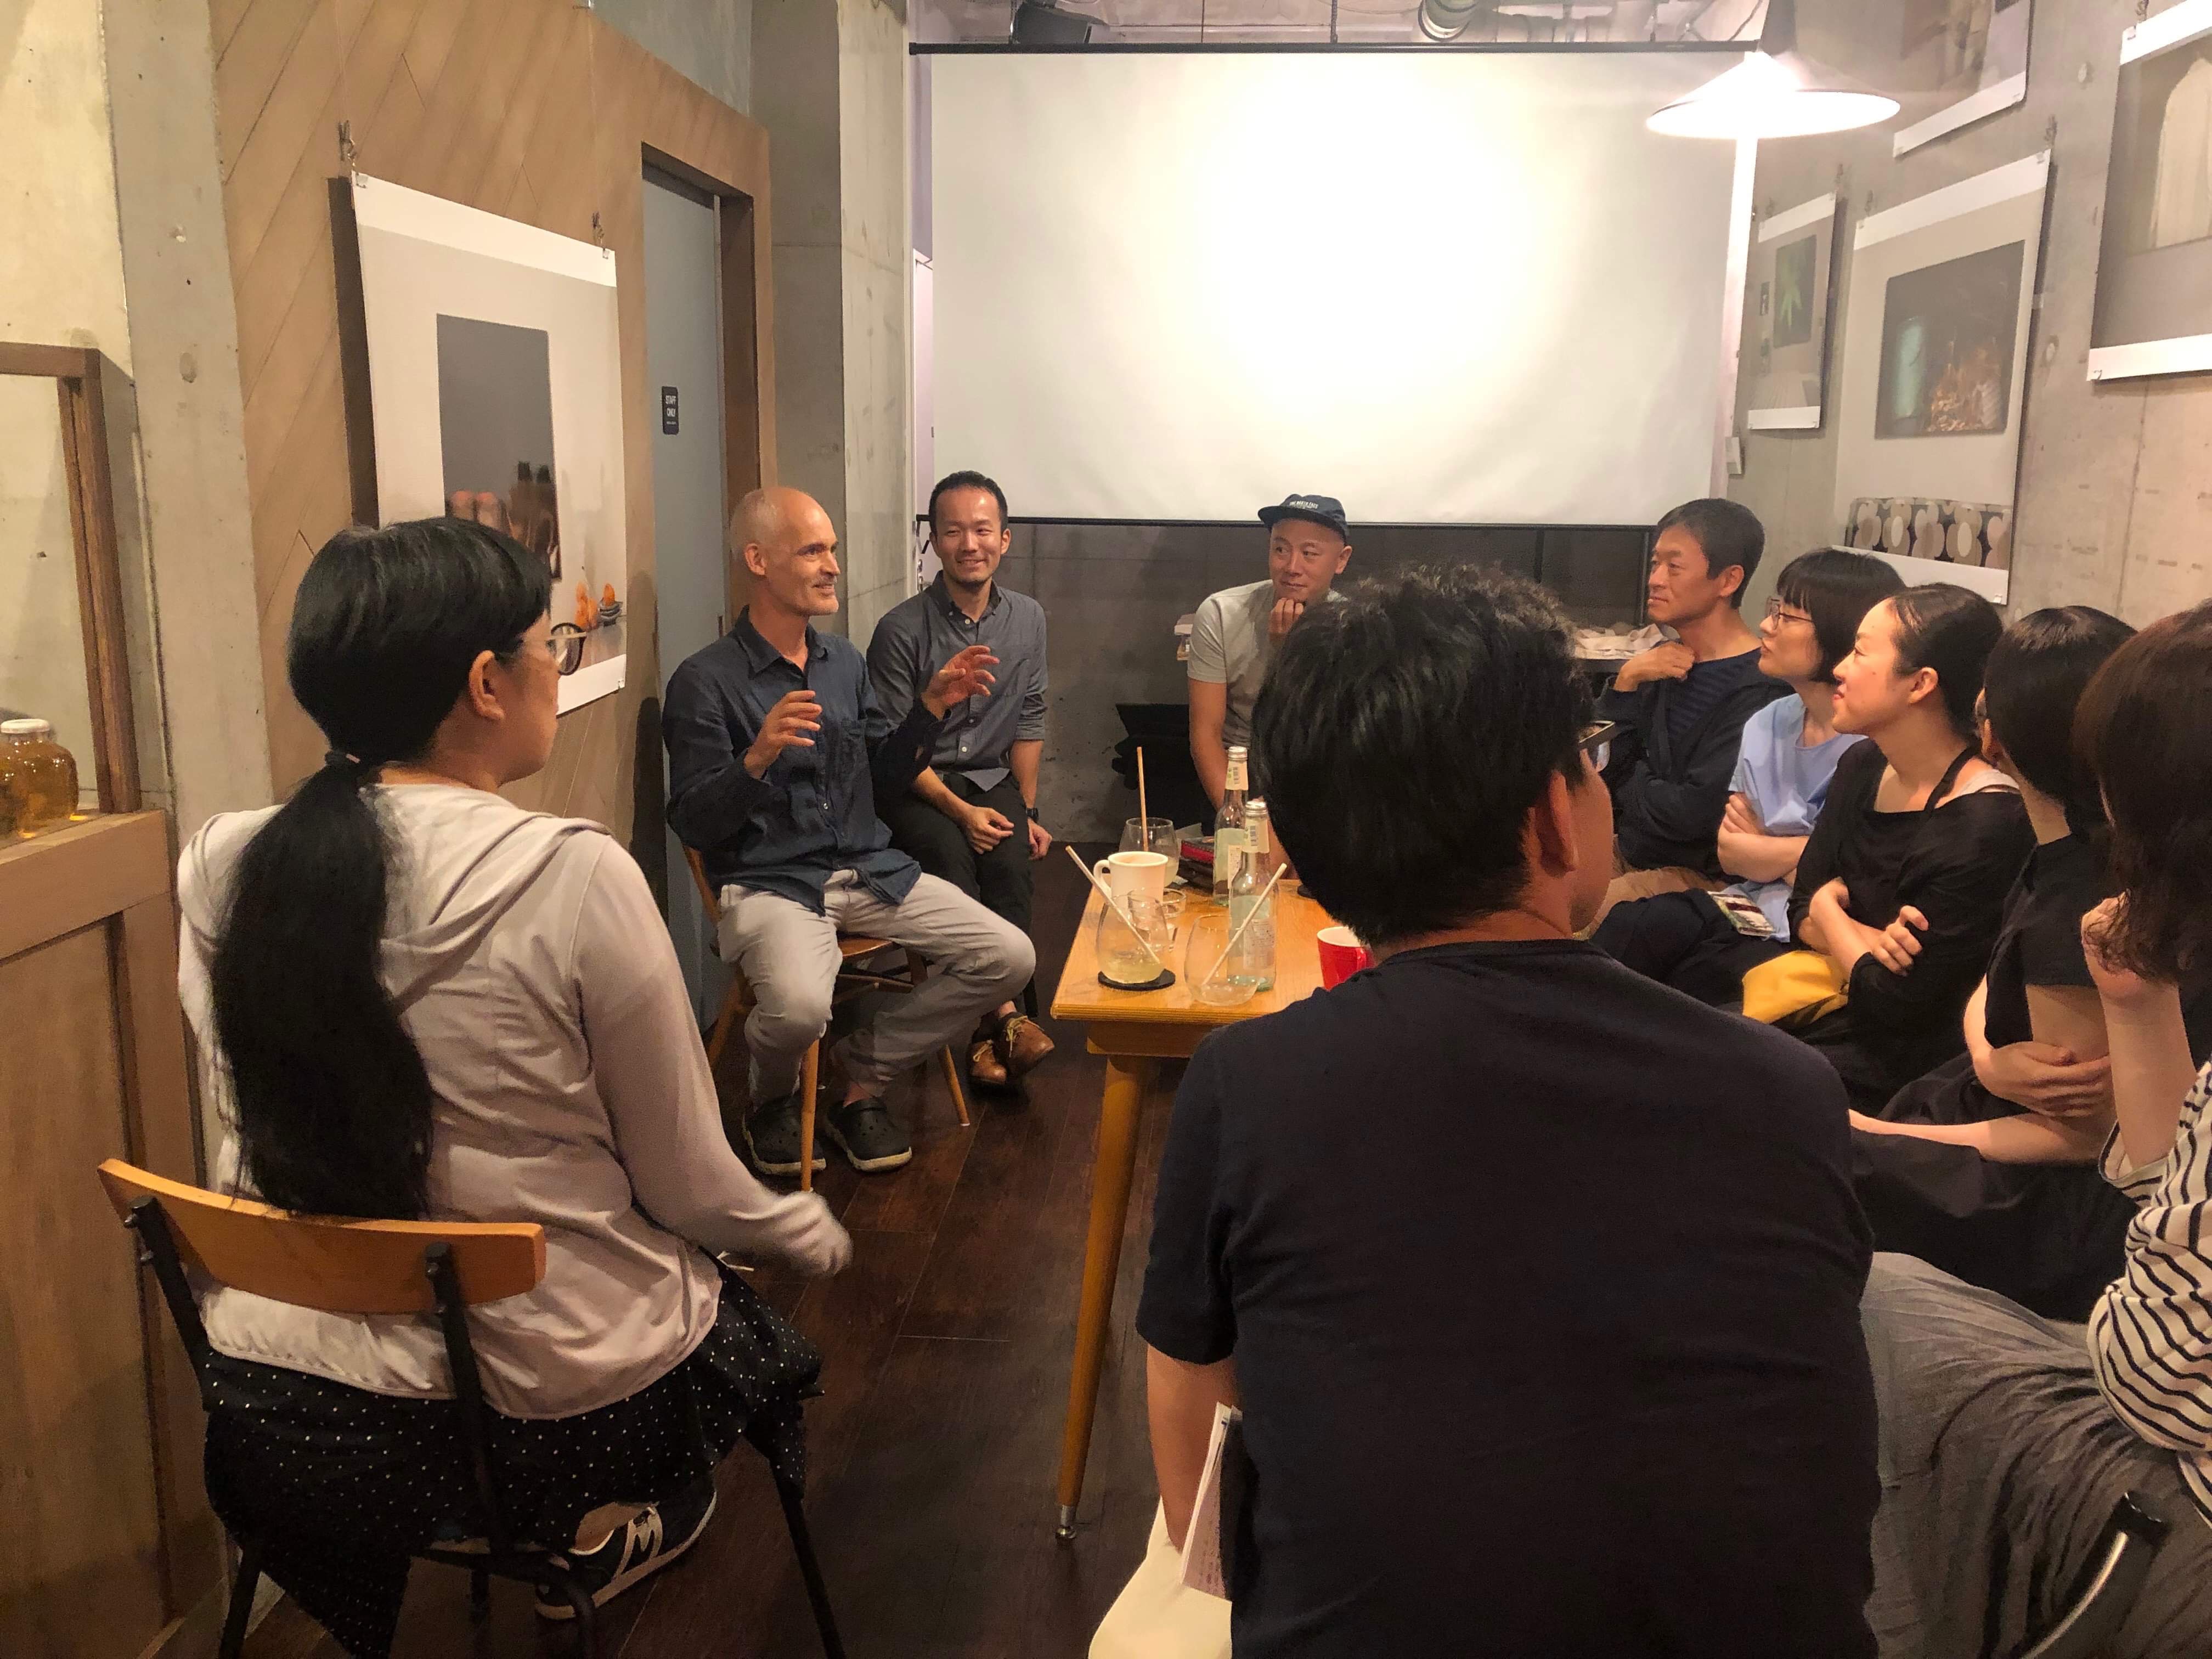 国立市のカフェcafe gallery chuffにて開催された小田川悠による対話型鑑賞会のアートイベント